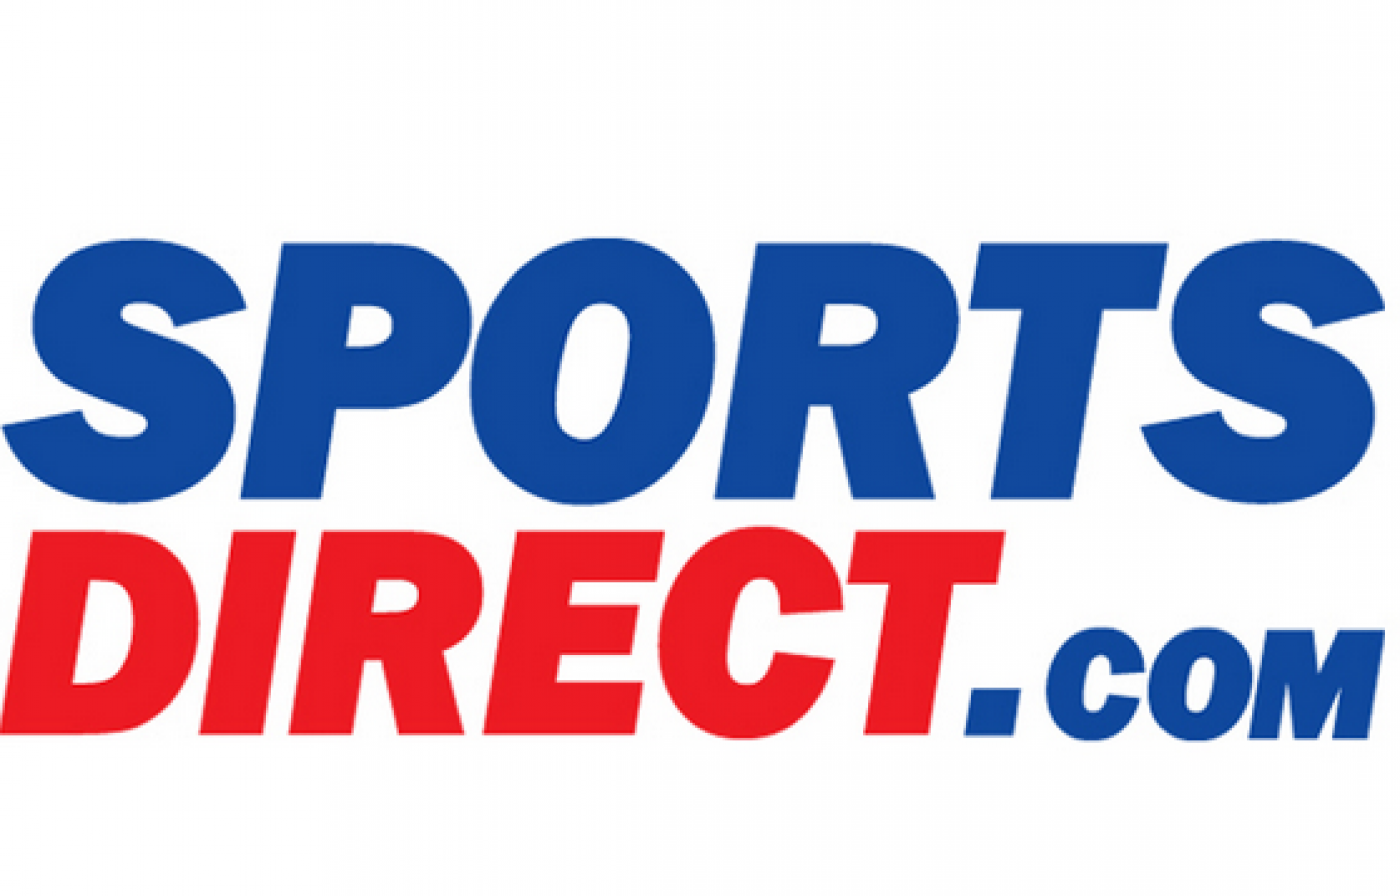 Sportdirect. Спортдирект. Спортдирект лого. Sportsdirect в Молдове. Sportsdirect реклама.